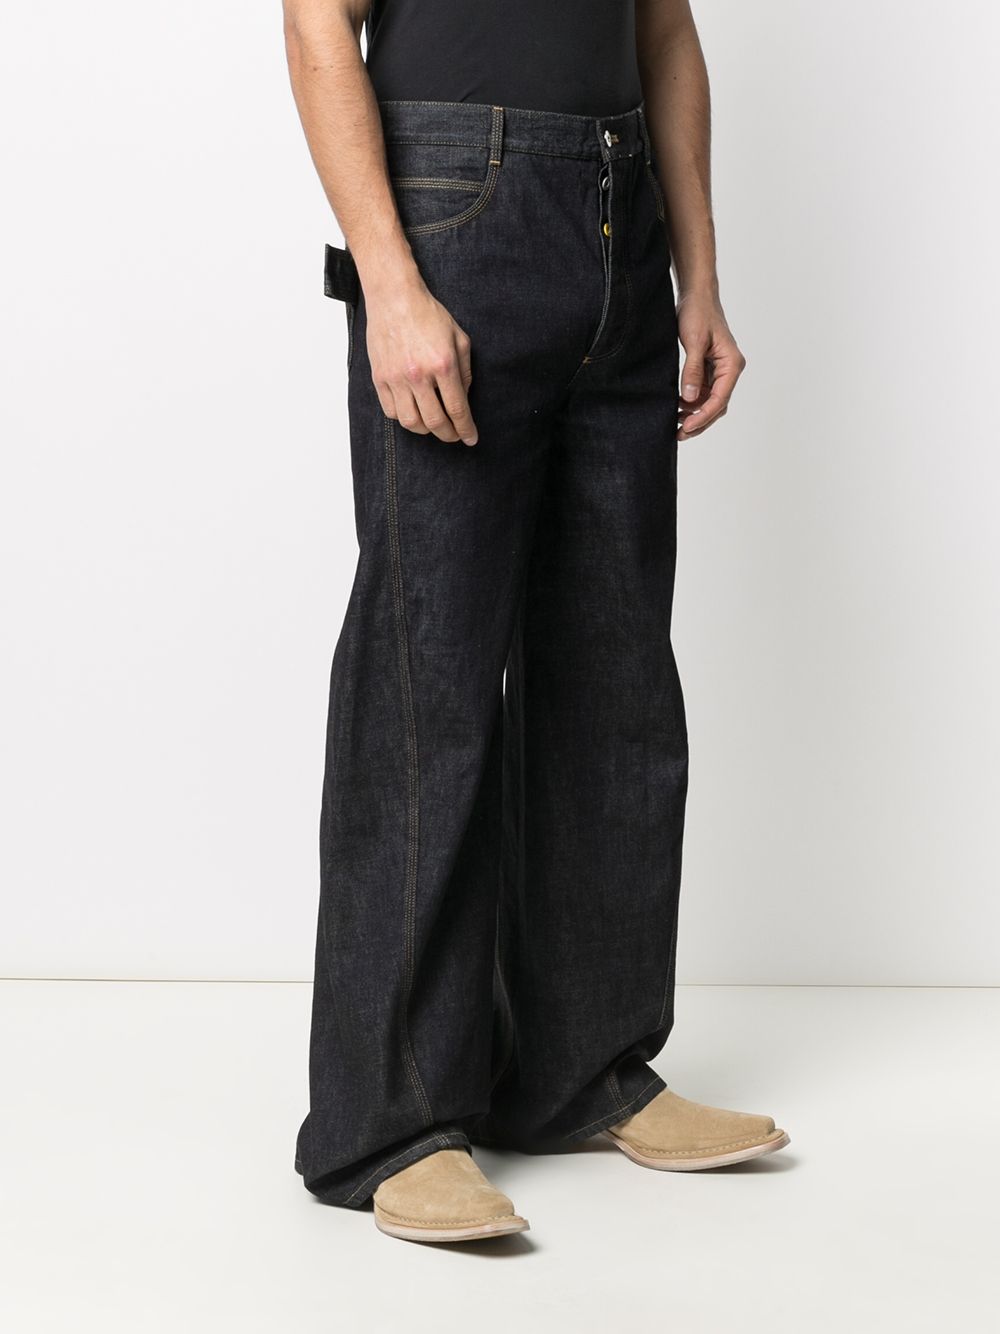 фото Bottega veneta длинные джинсы широкого кроя